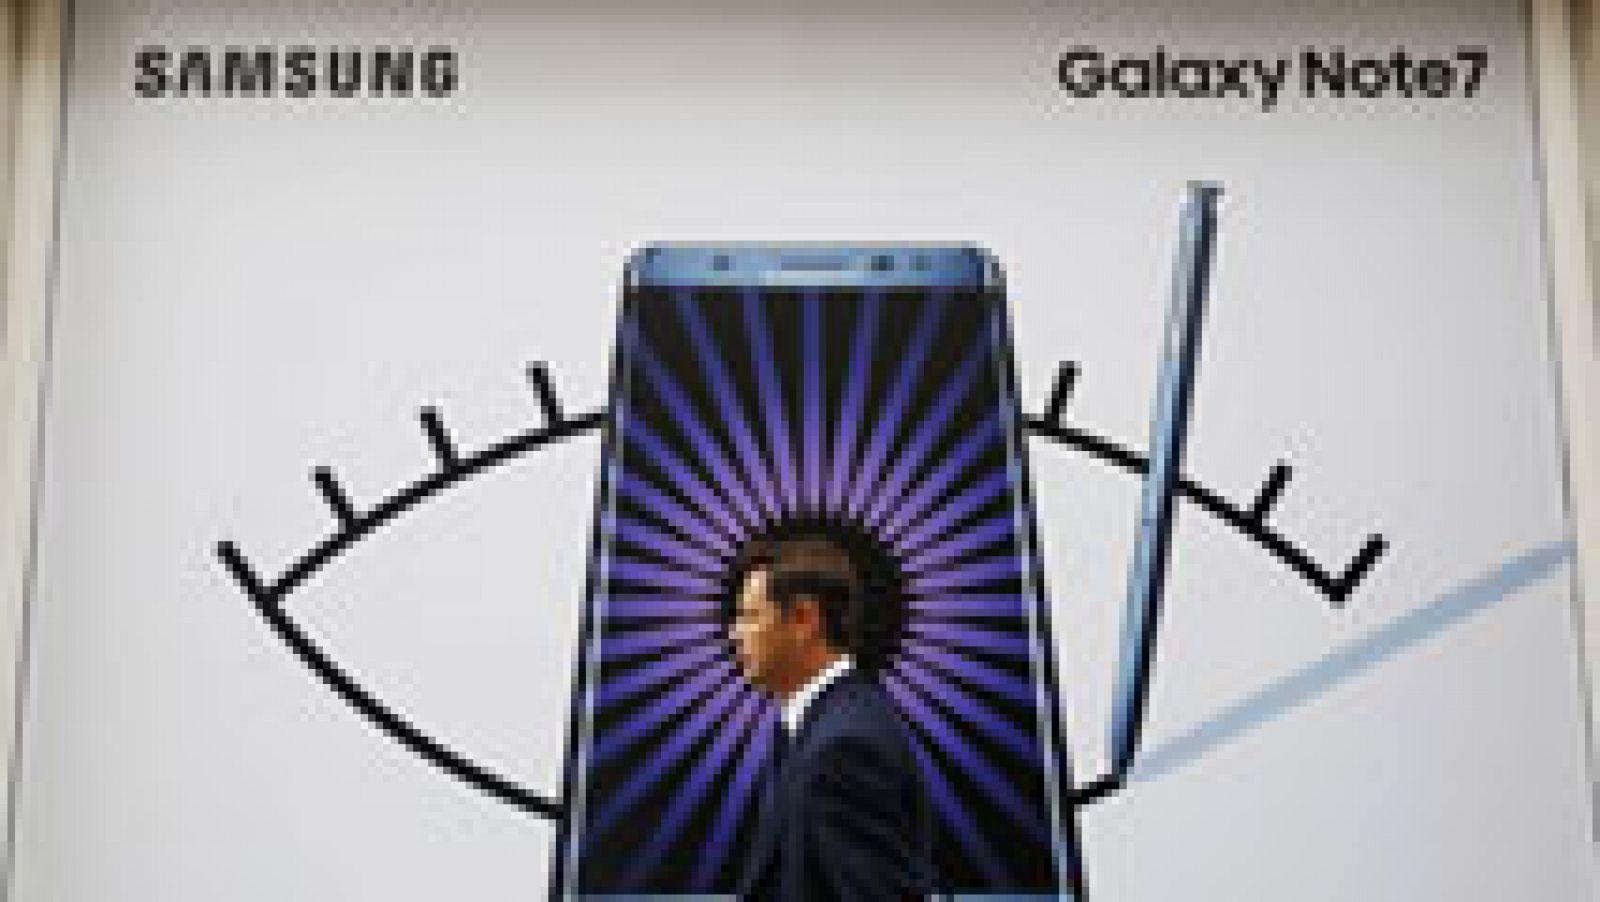 Samsung suspende la venta del Galaxy Note 7, que lanzó hace menos de quince días